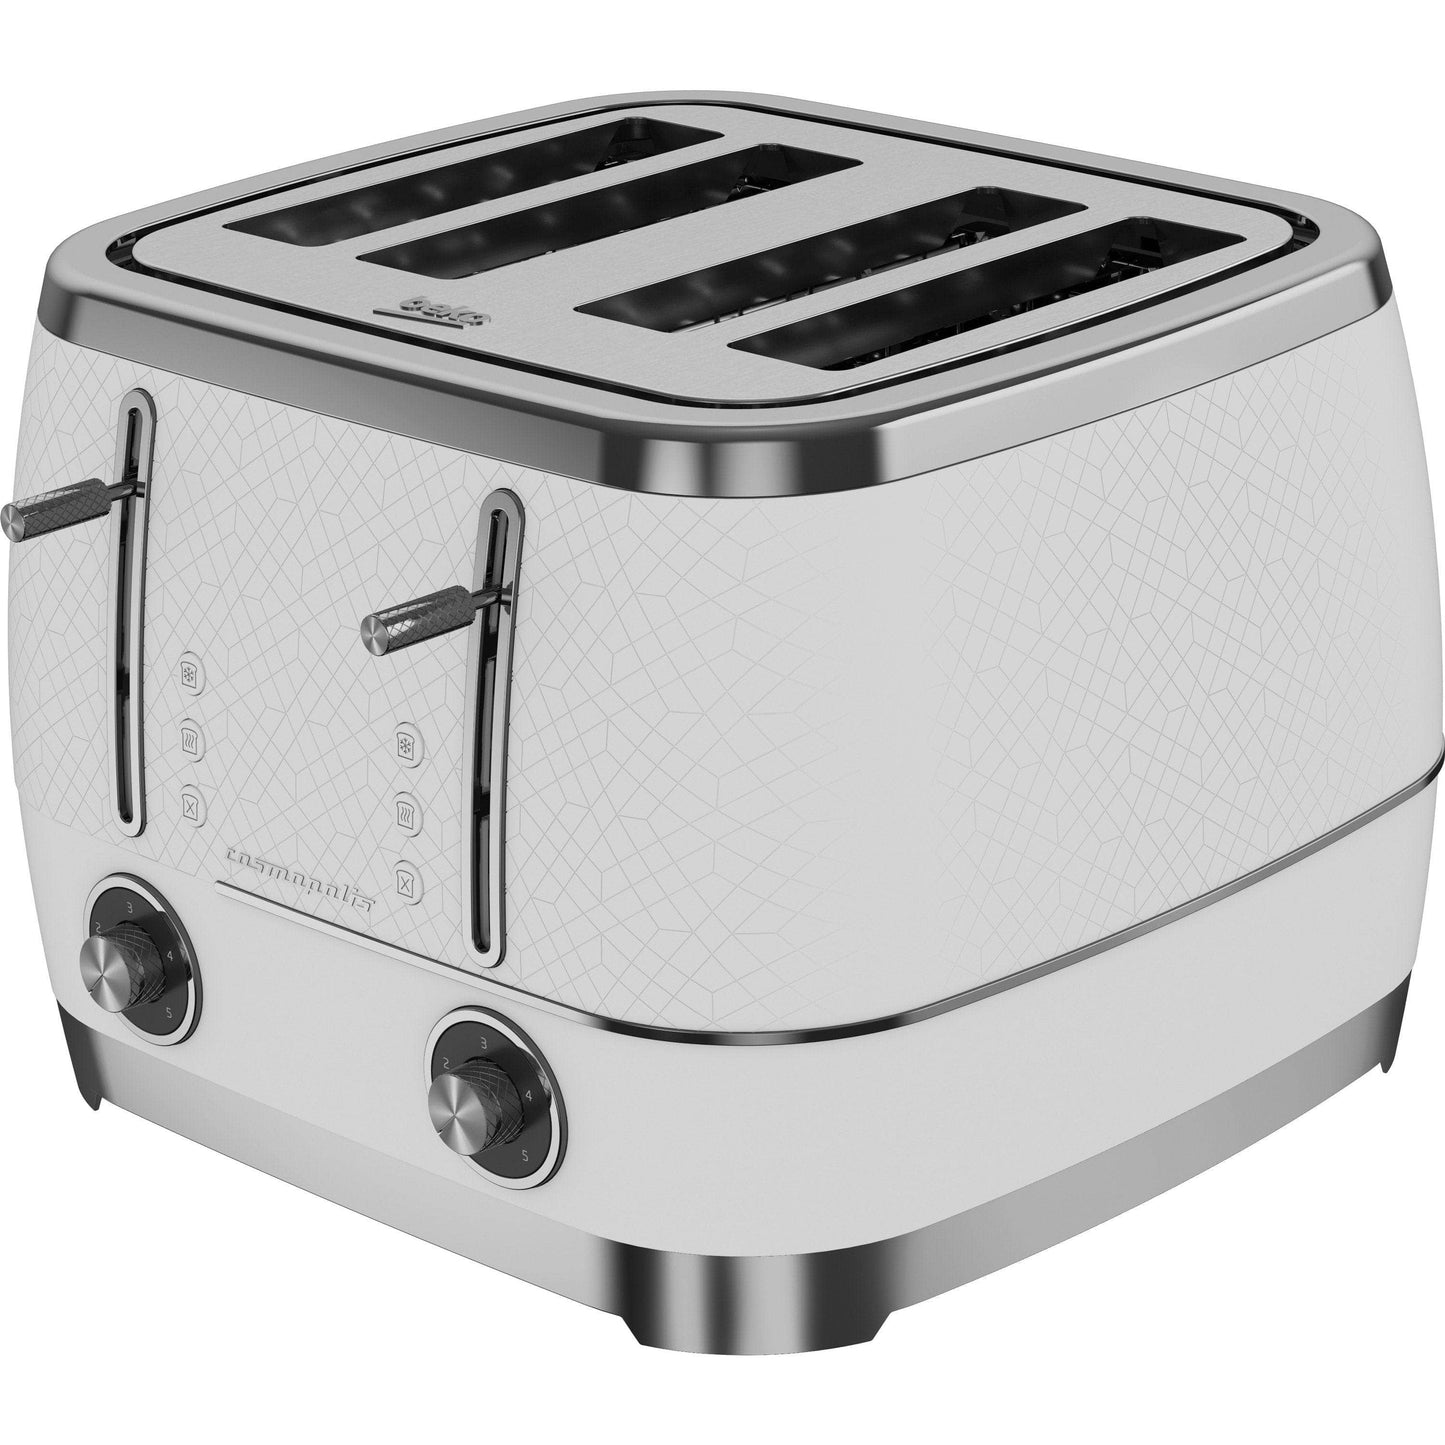 Kitchenware  -  Beko 4 Slice Toaster - White & Chrome  -  60005232